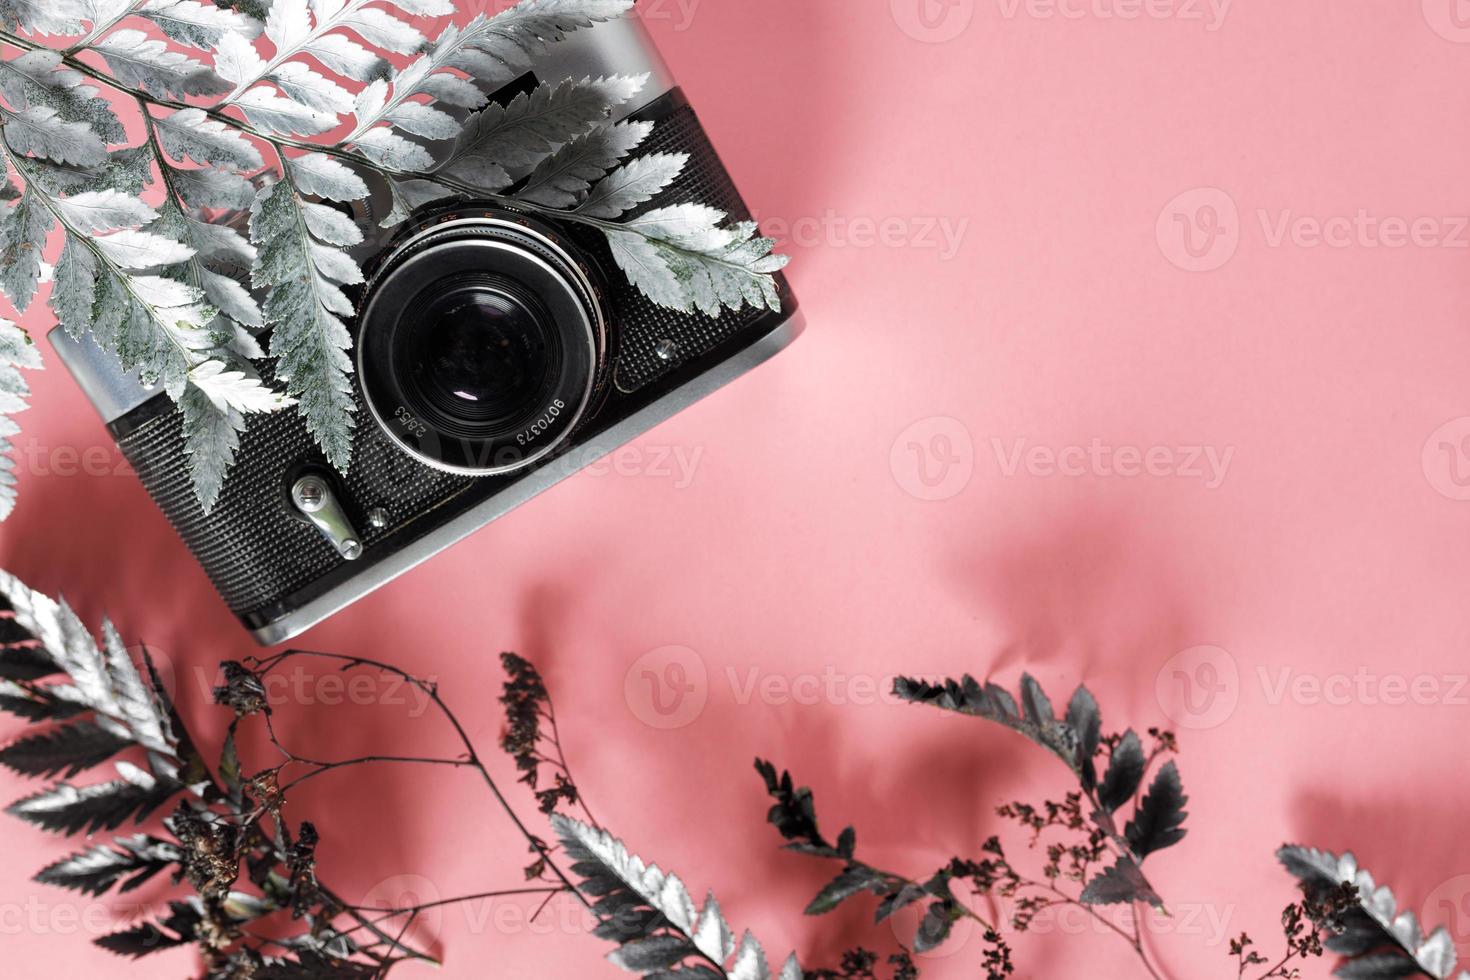 em branco para decorar postais ou um vale-presente para um fotógrafo. câmera antiga em um fundo rosa com flores secas cinza e espaço para texto foto